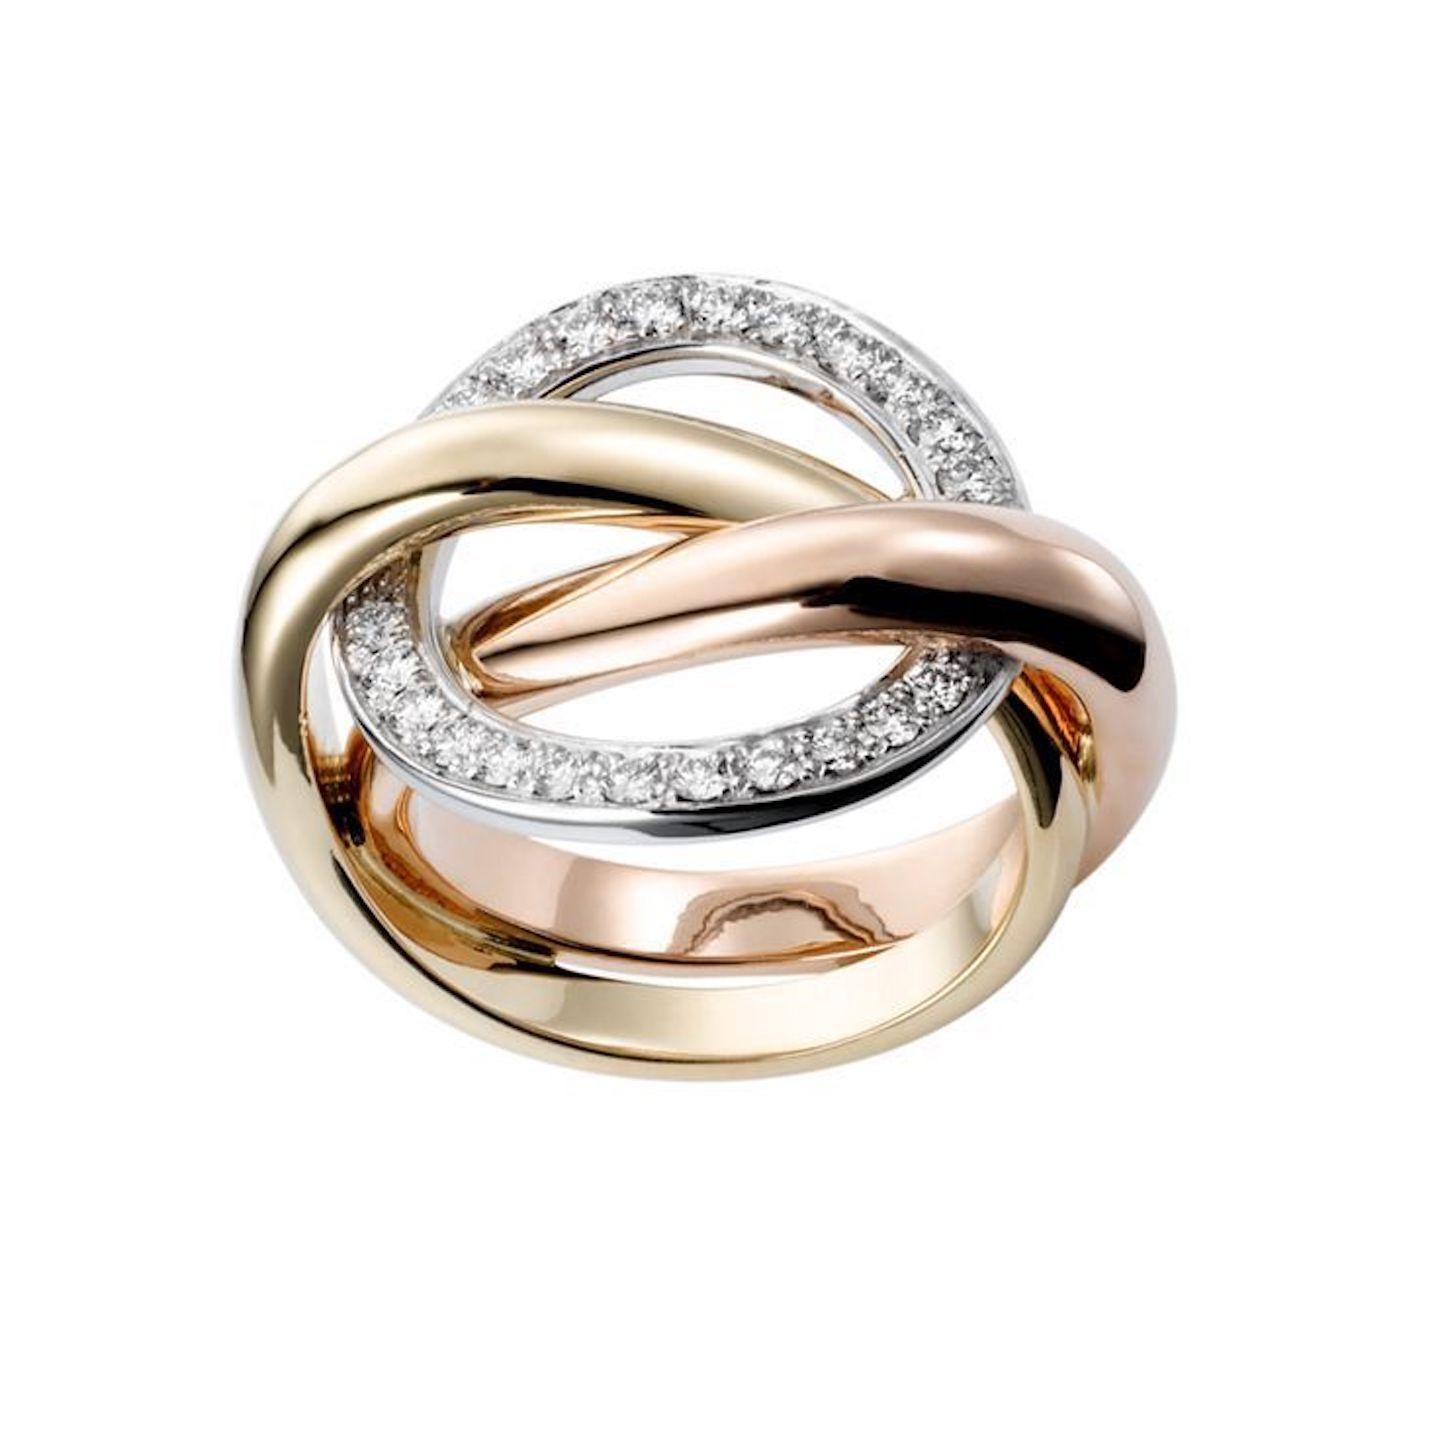 Schöner Ring des famosen Schmuckhauses Cartier. Dieses Design ist als Cartier Trinity 'Crash' Ring bekannt und besteht aus ineinandergreifenden dreifarbigen 18-karätigen Goldbändern. Das feste Band aus Weißgold ist mit runden Diamanten im